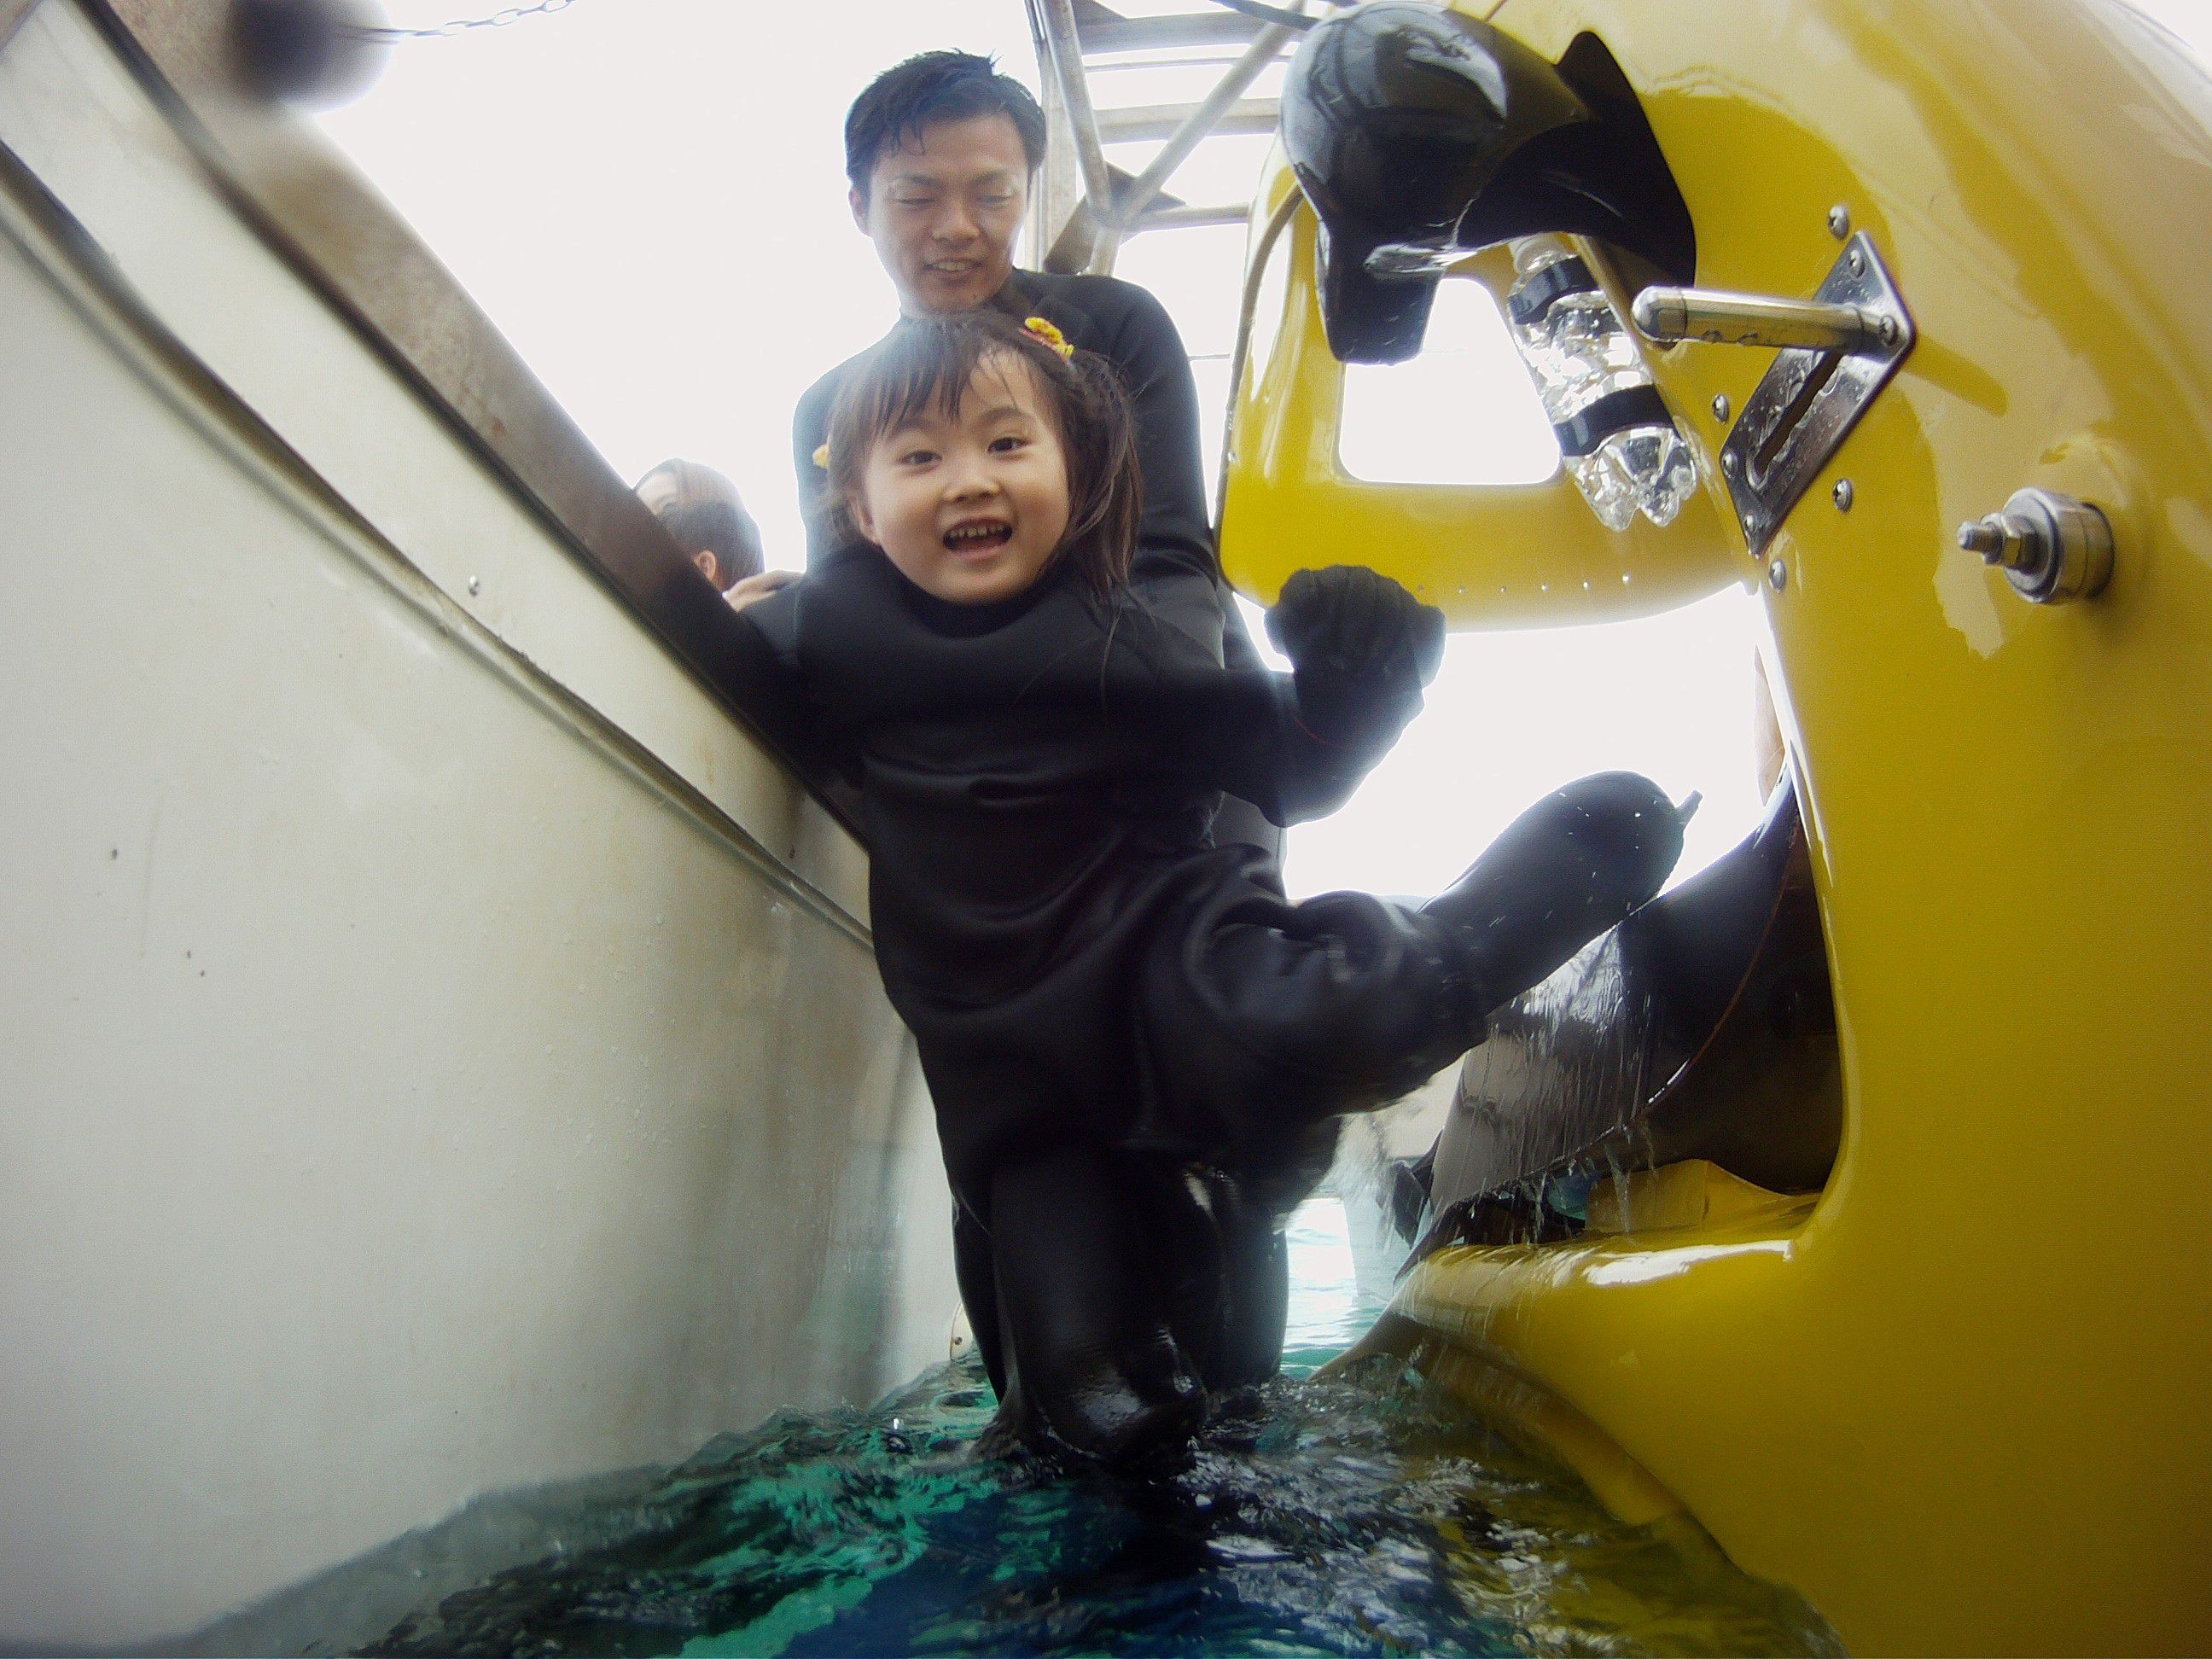 【沖縄】そんなバカな!? 特殊ヘルメットを被って「水中スクーター」で海中ドライブ!?